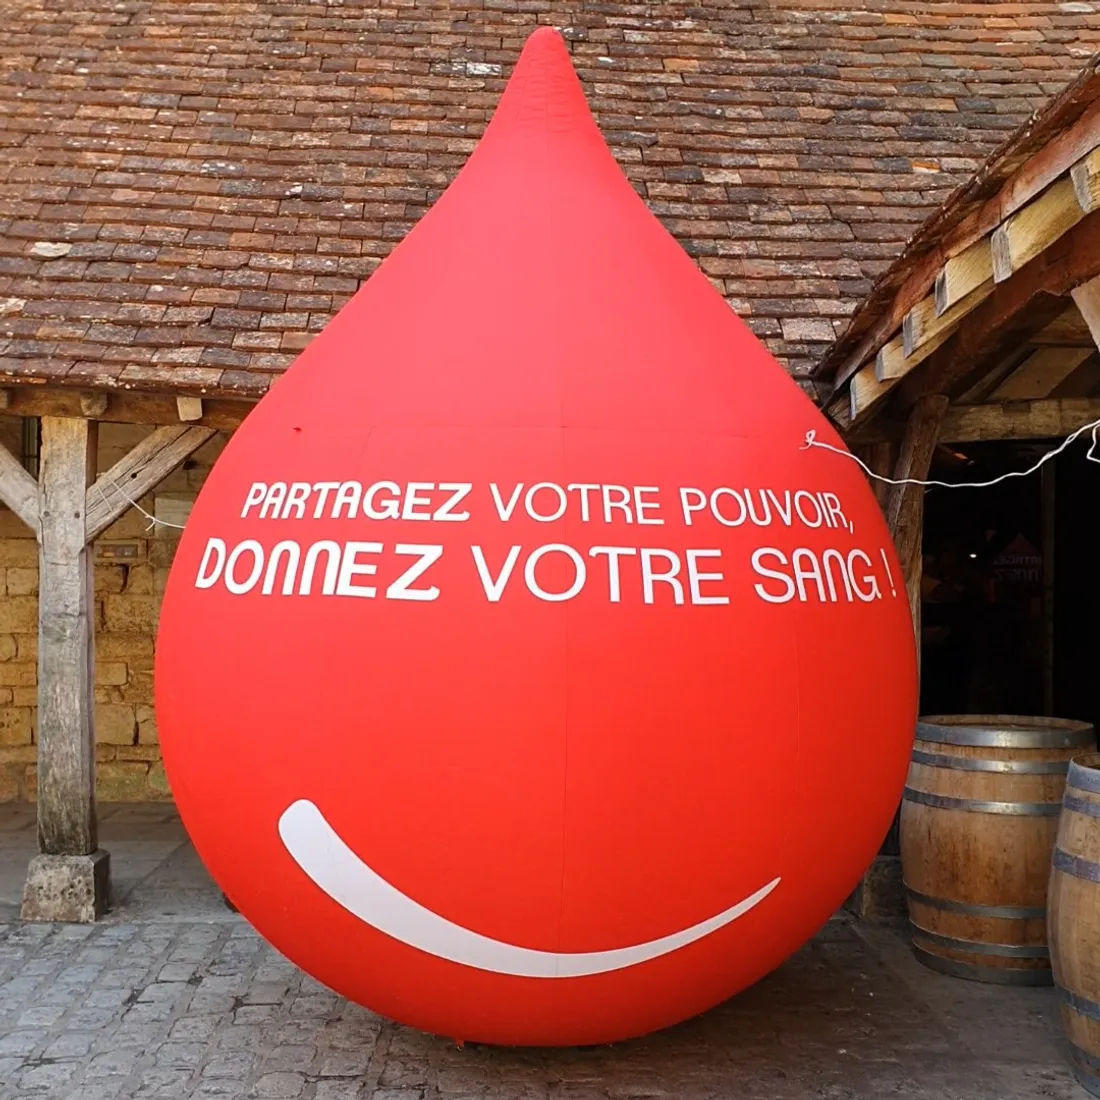 Cela fait presque 10 ans que l'EFS Bourgogne-Franche-Comté organise la semaine estivale du don.